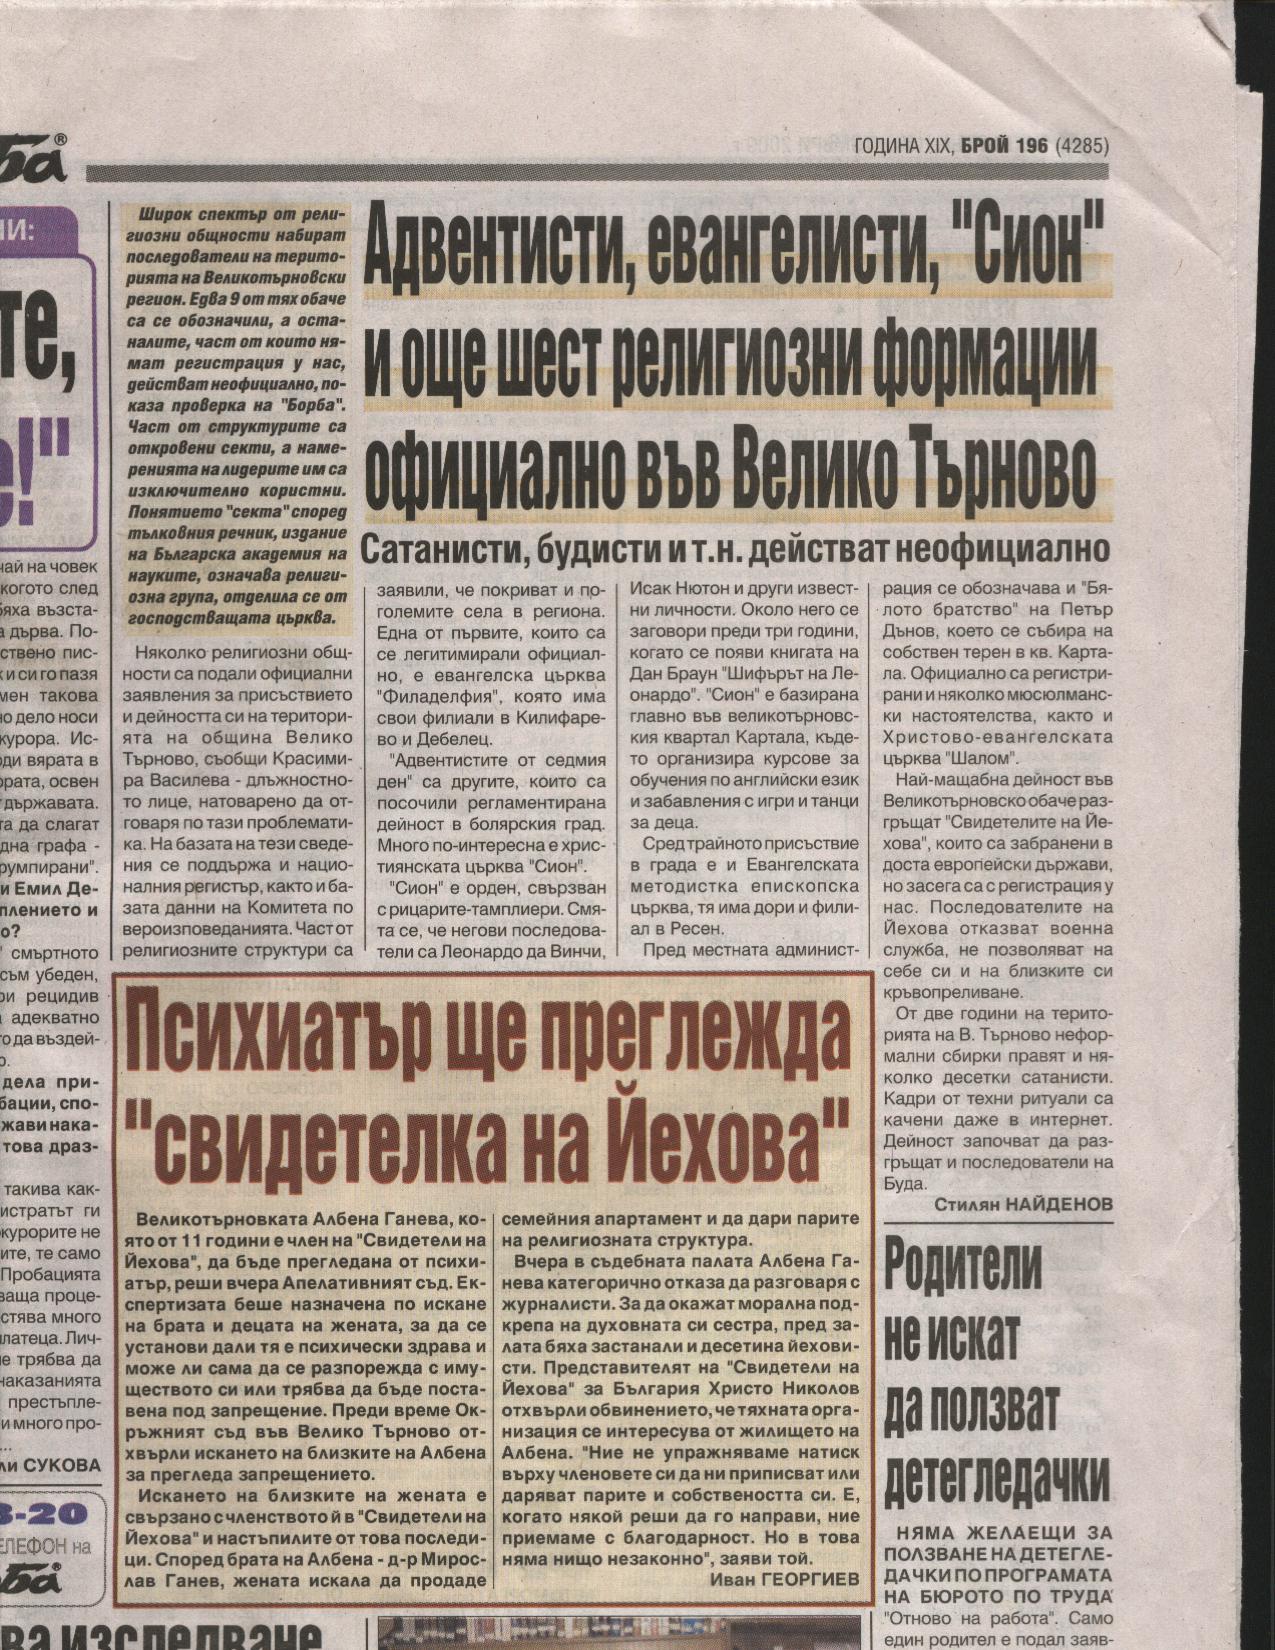 2009tarnovo-news-article